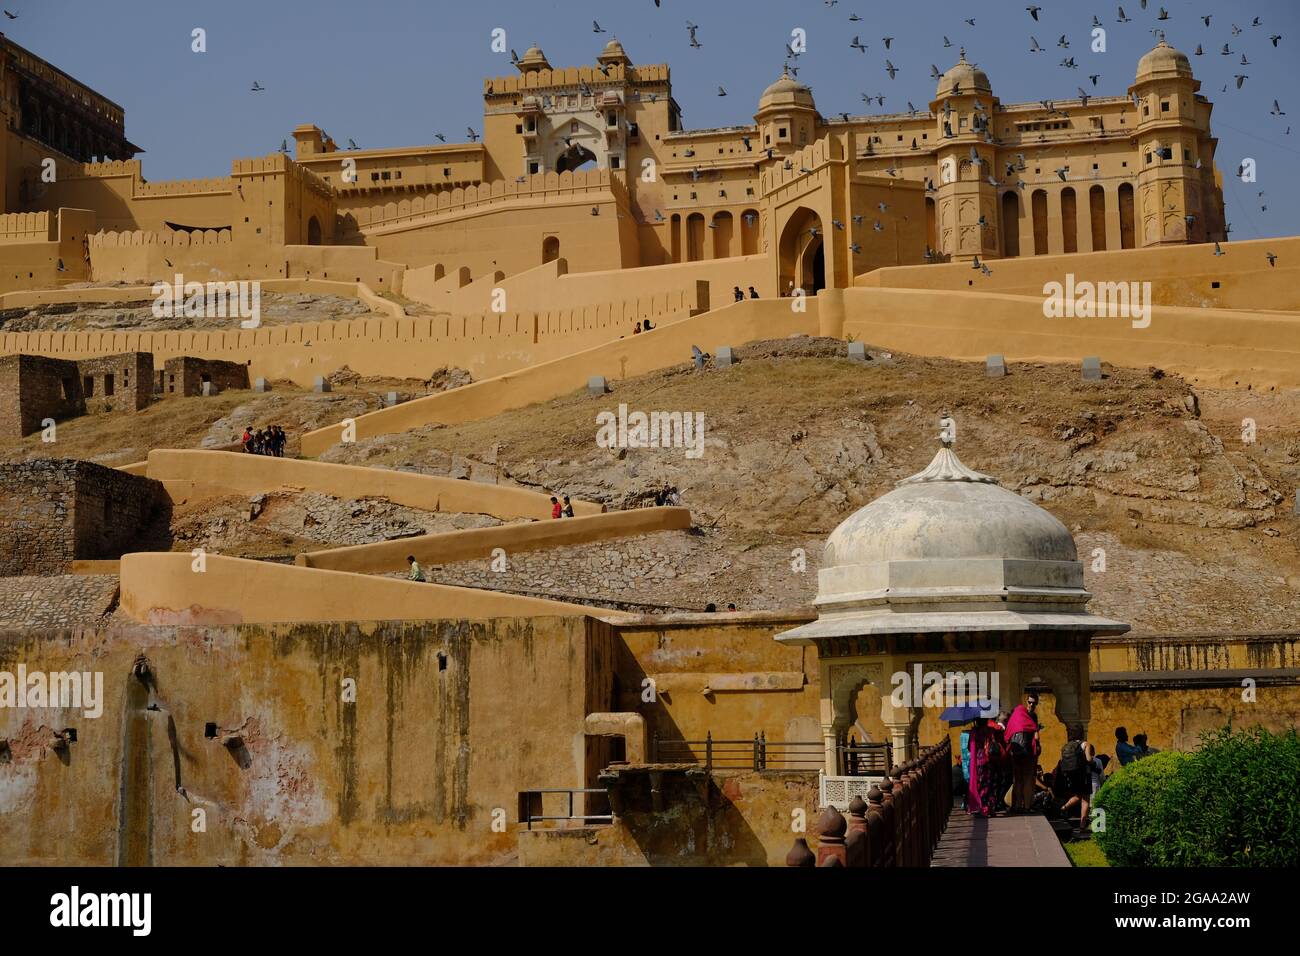 India Rajasthan Jaipur -  Amber Palace and Sheesh Mahal Amber Fort Stock Photo